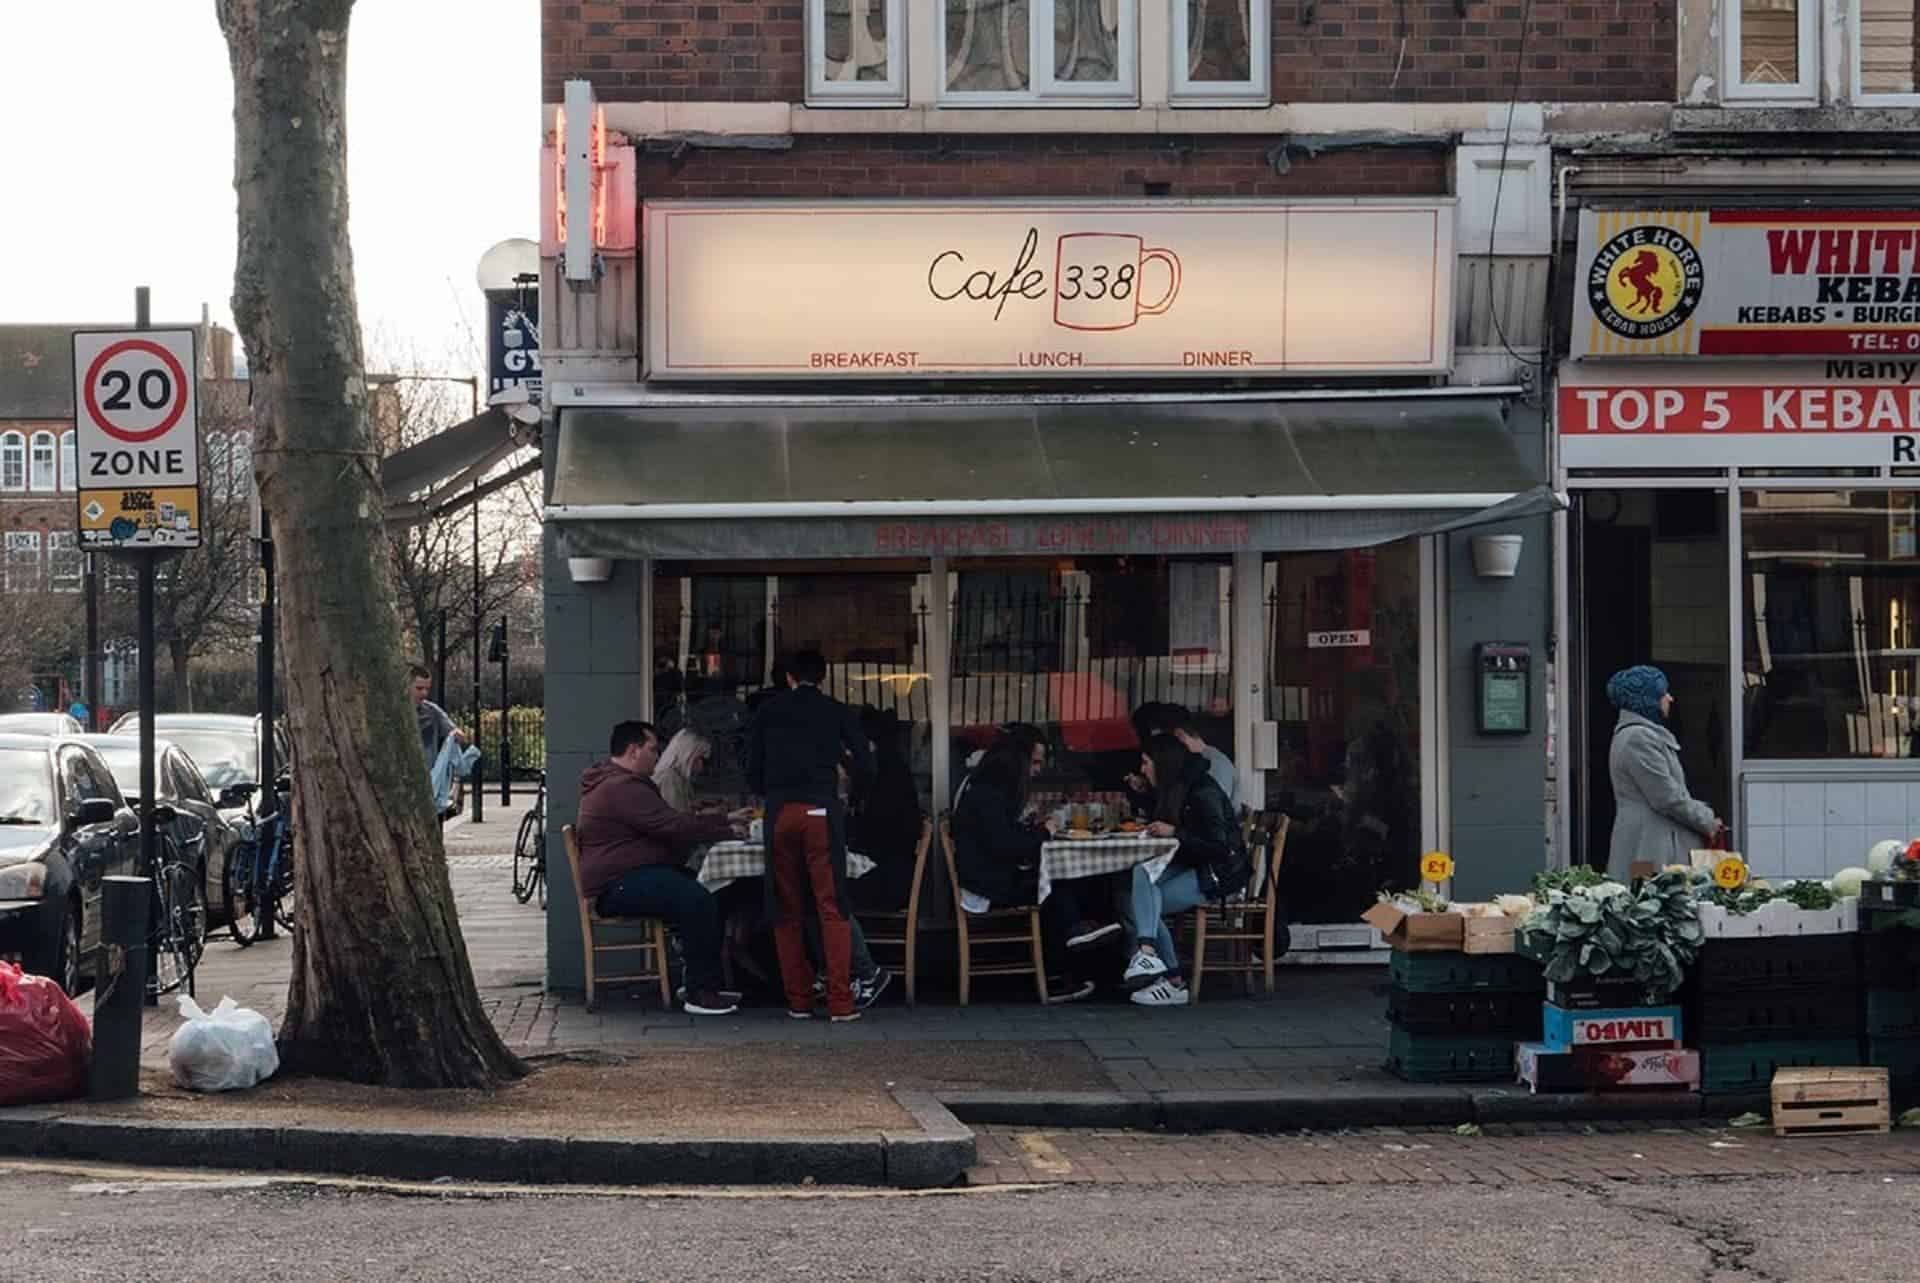 Cafe 338 London in UK